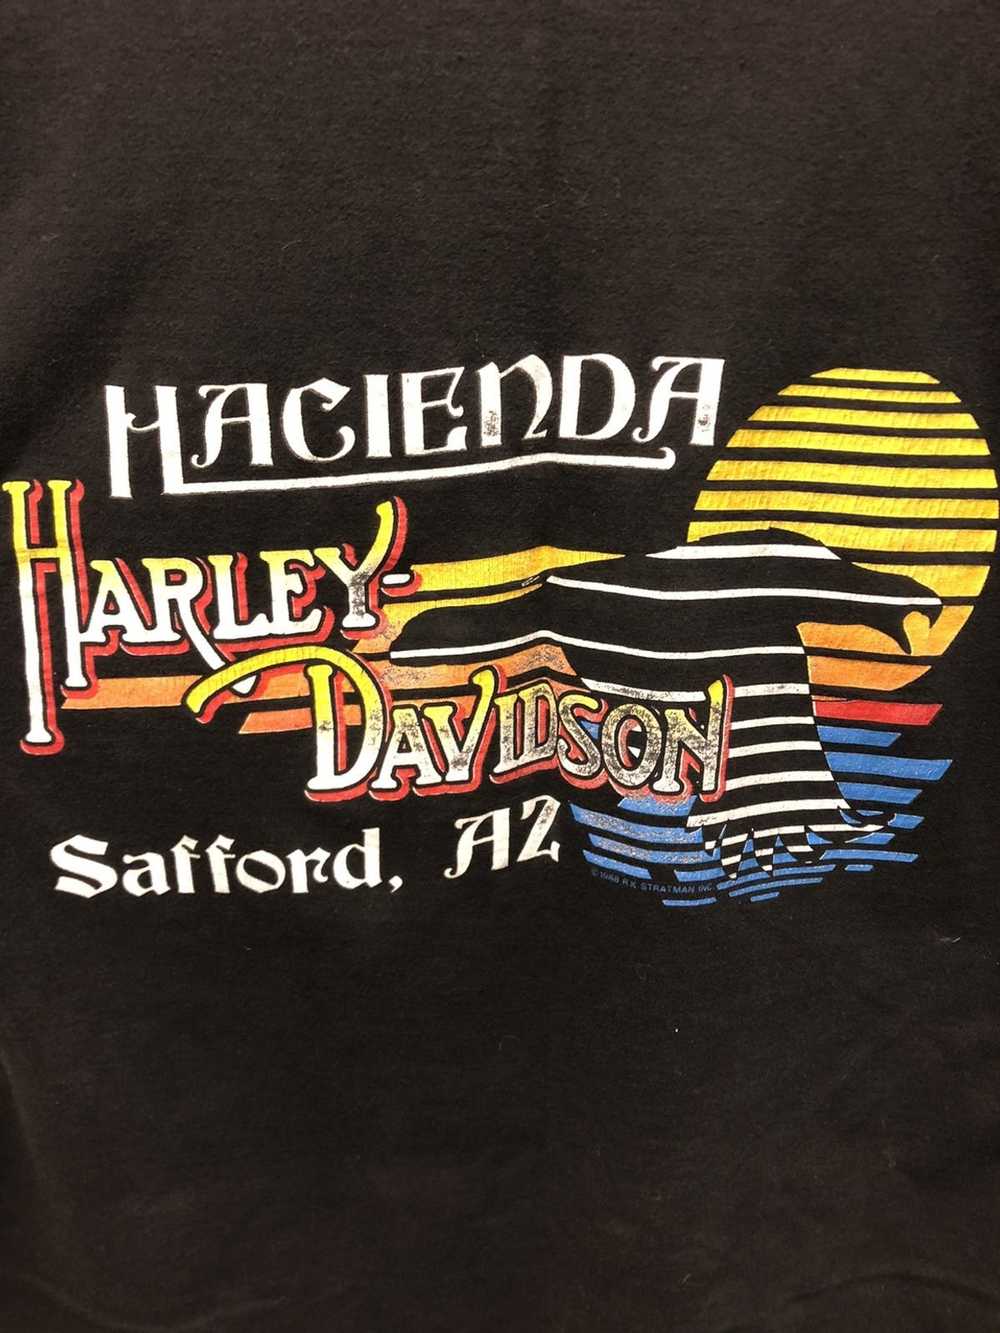 Harley Davidson Vintage Harley Davidson T-shirt - image 5